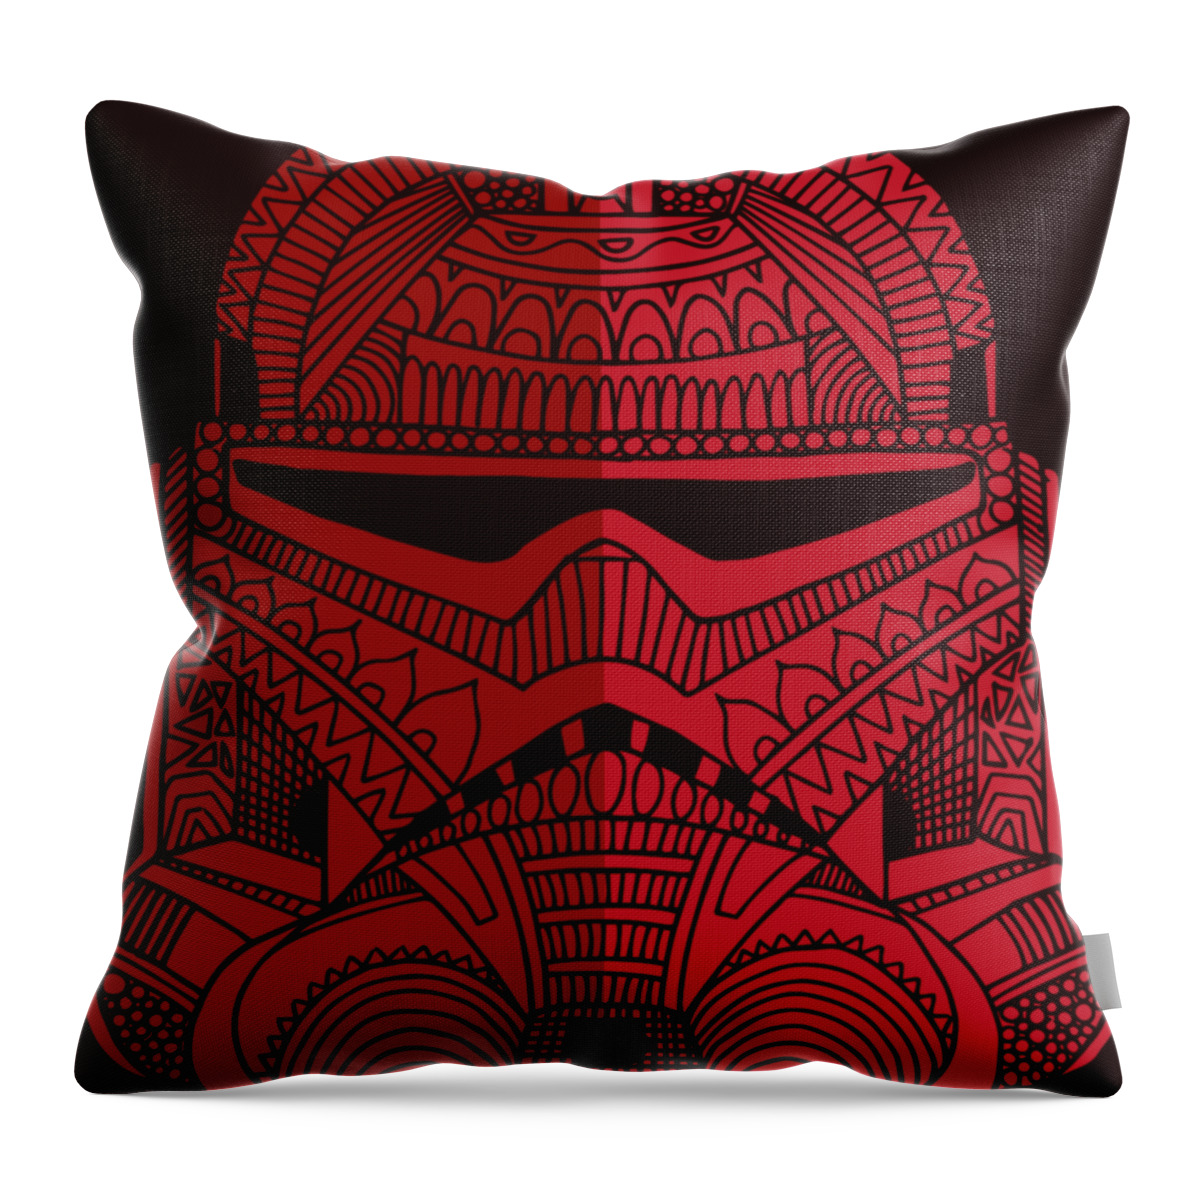 Stormtrooper Helmet - Star Wars Art - Red Throw Pillow by Studio Grafiikka  - Pixels